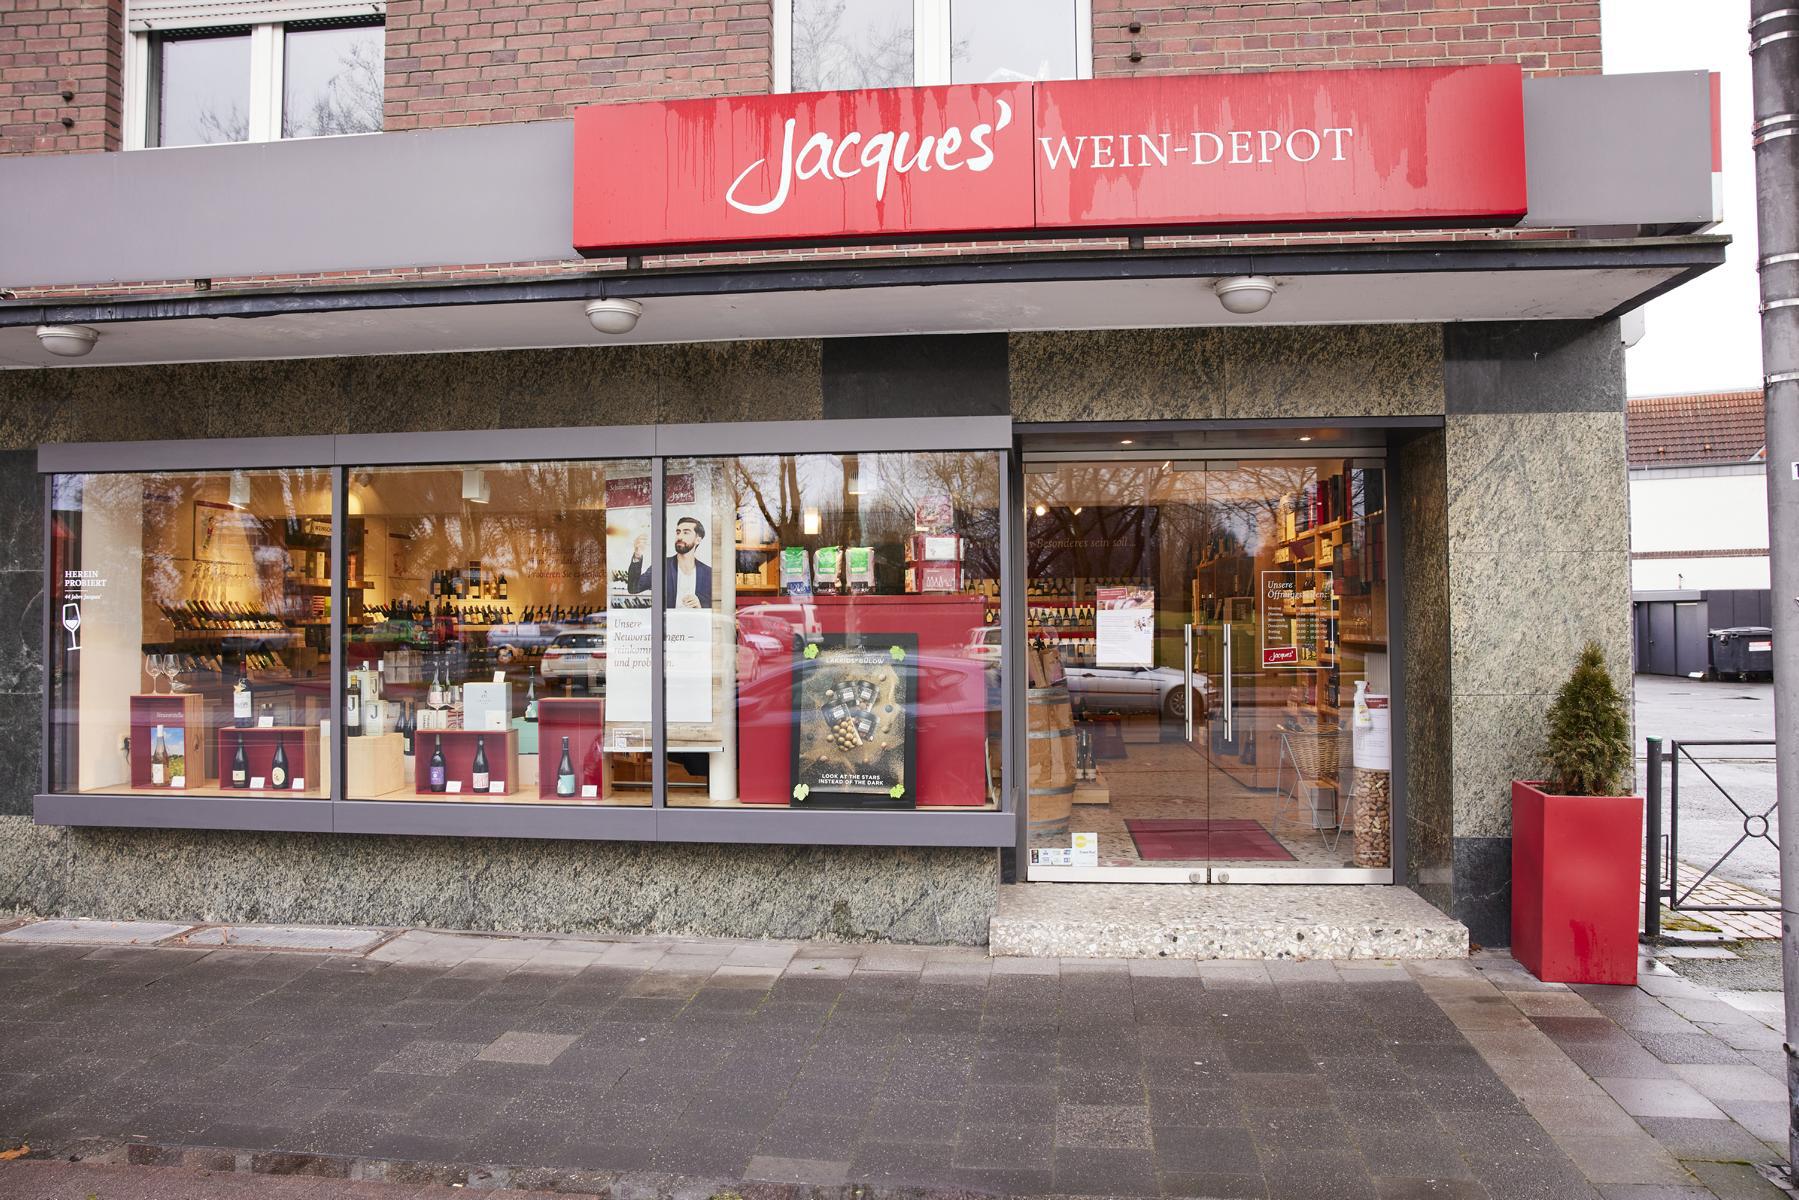 Jacques’ Wein-Depot Münster-Hiltrup, Westfalenstraße 152 in Münster